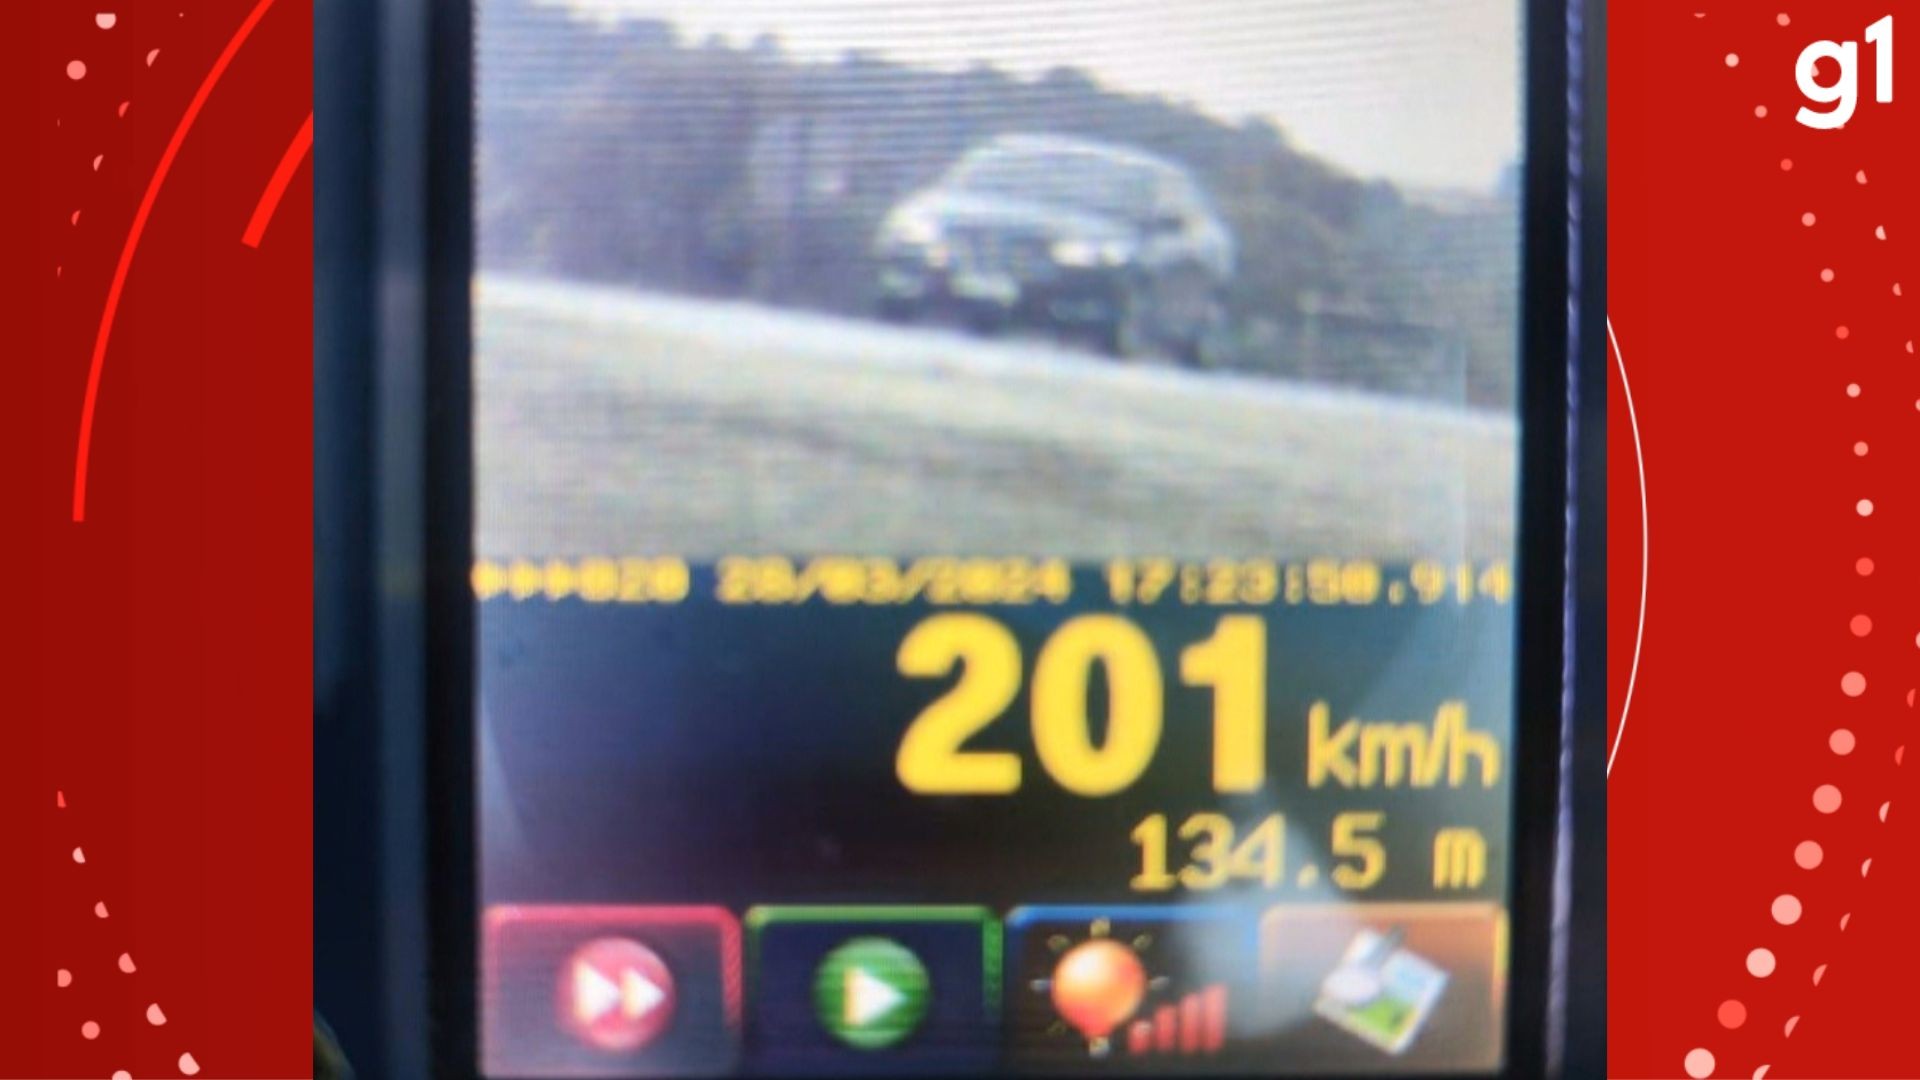 Carro é flagrado a mais de 200 km/h em rodovia do RS; limite é de 110 km/h